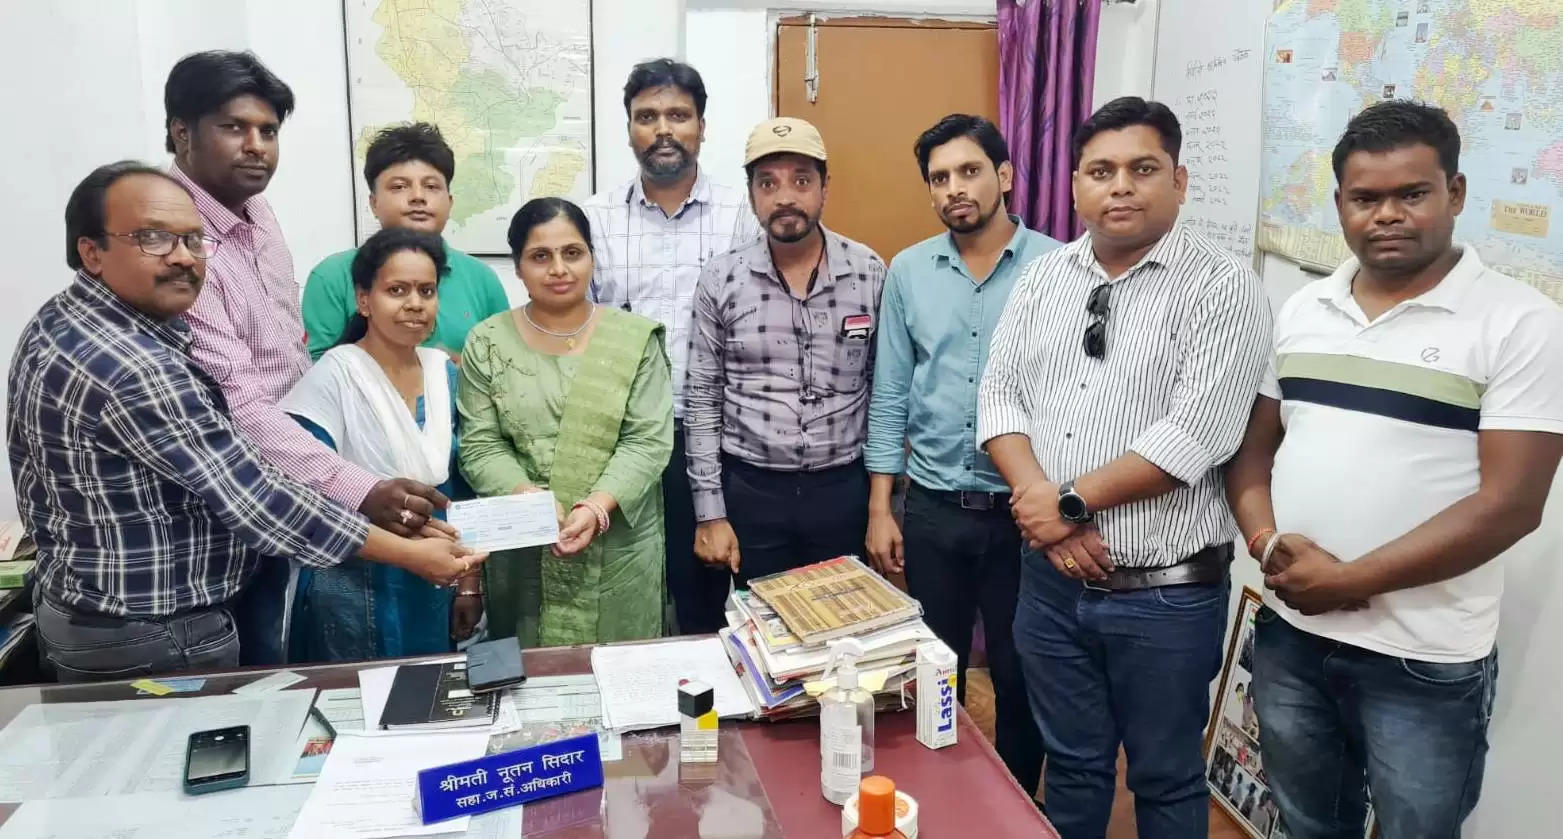 दिवंगत पत्रकार स्वर्गीय विश्वबंधु शर्मा के परिवार को राज्य शासन से मिली 5 लाख की सहायता राशि